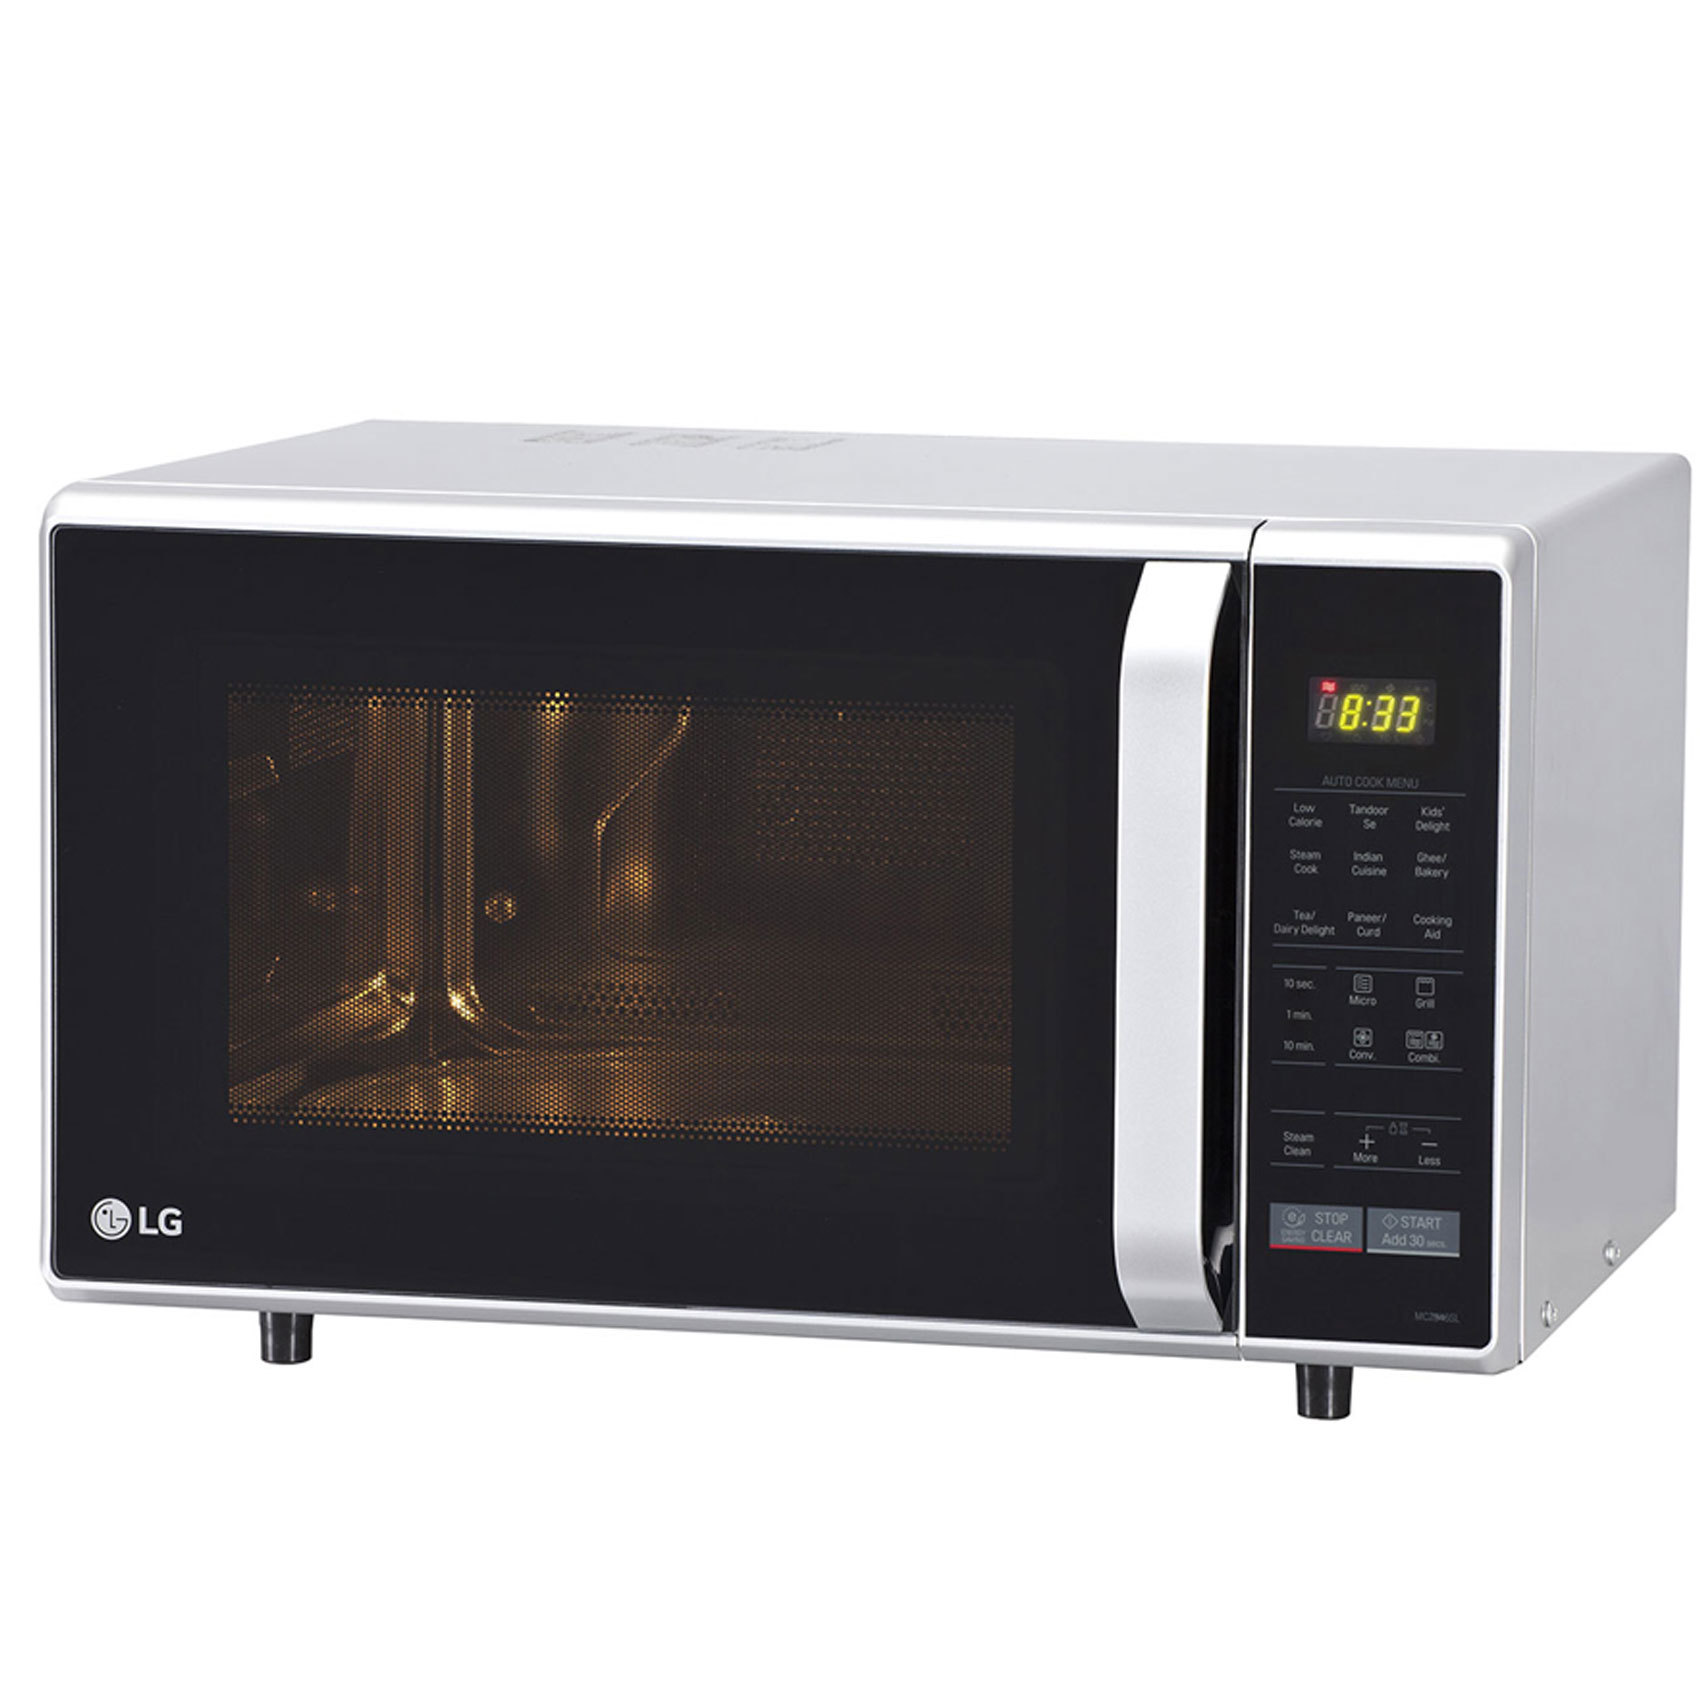 Buy LG Microwave Mc2846Sl Online in UAE - Carrefour UAE